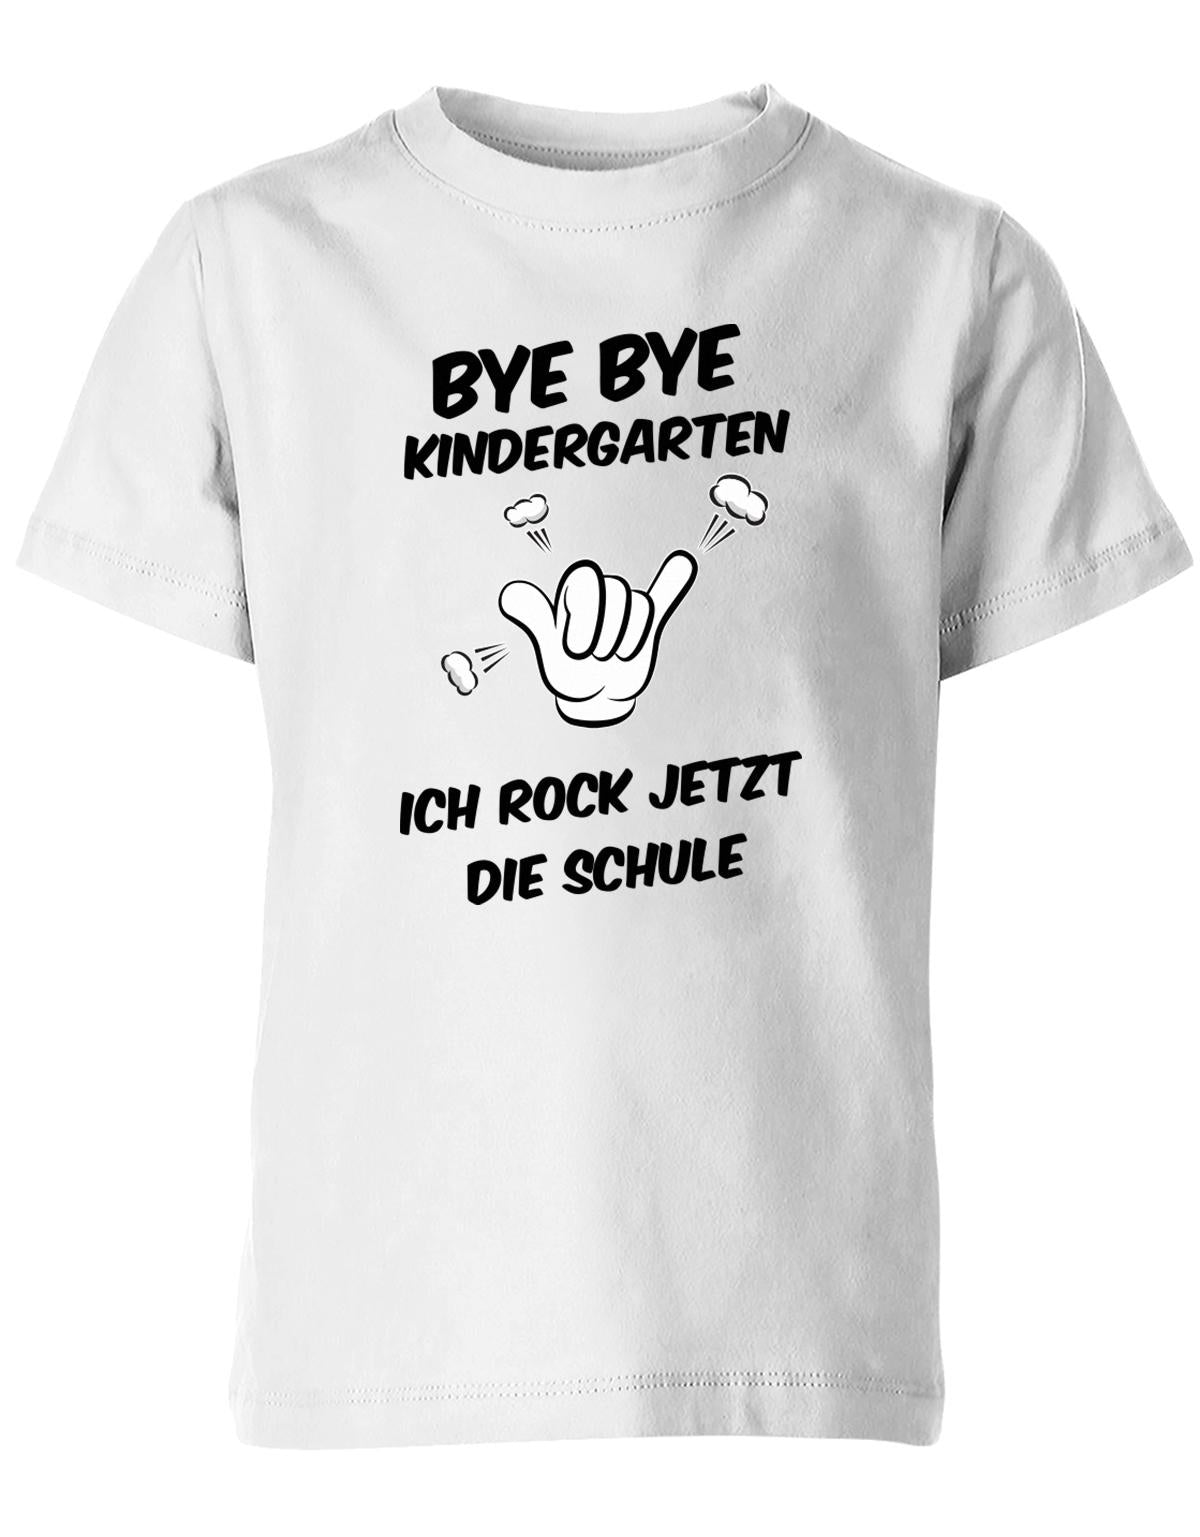 Bye bye Kindergarten ich rock jetzt die Schule - Einschulung - Kinder T-Shirt Weiss